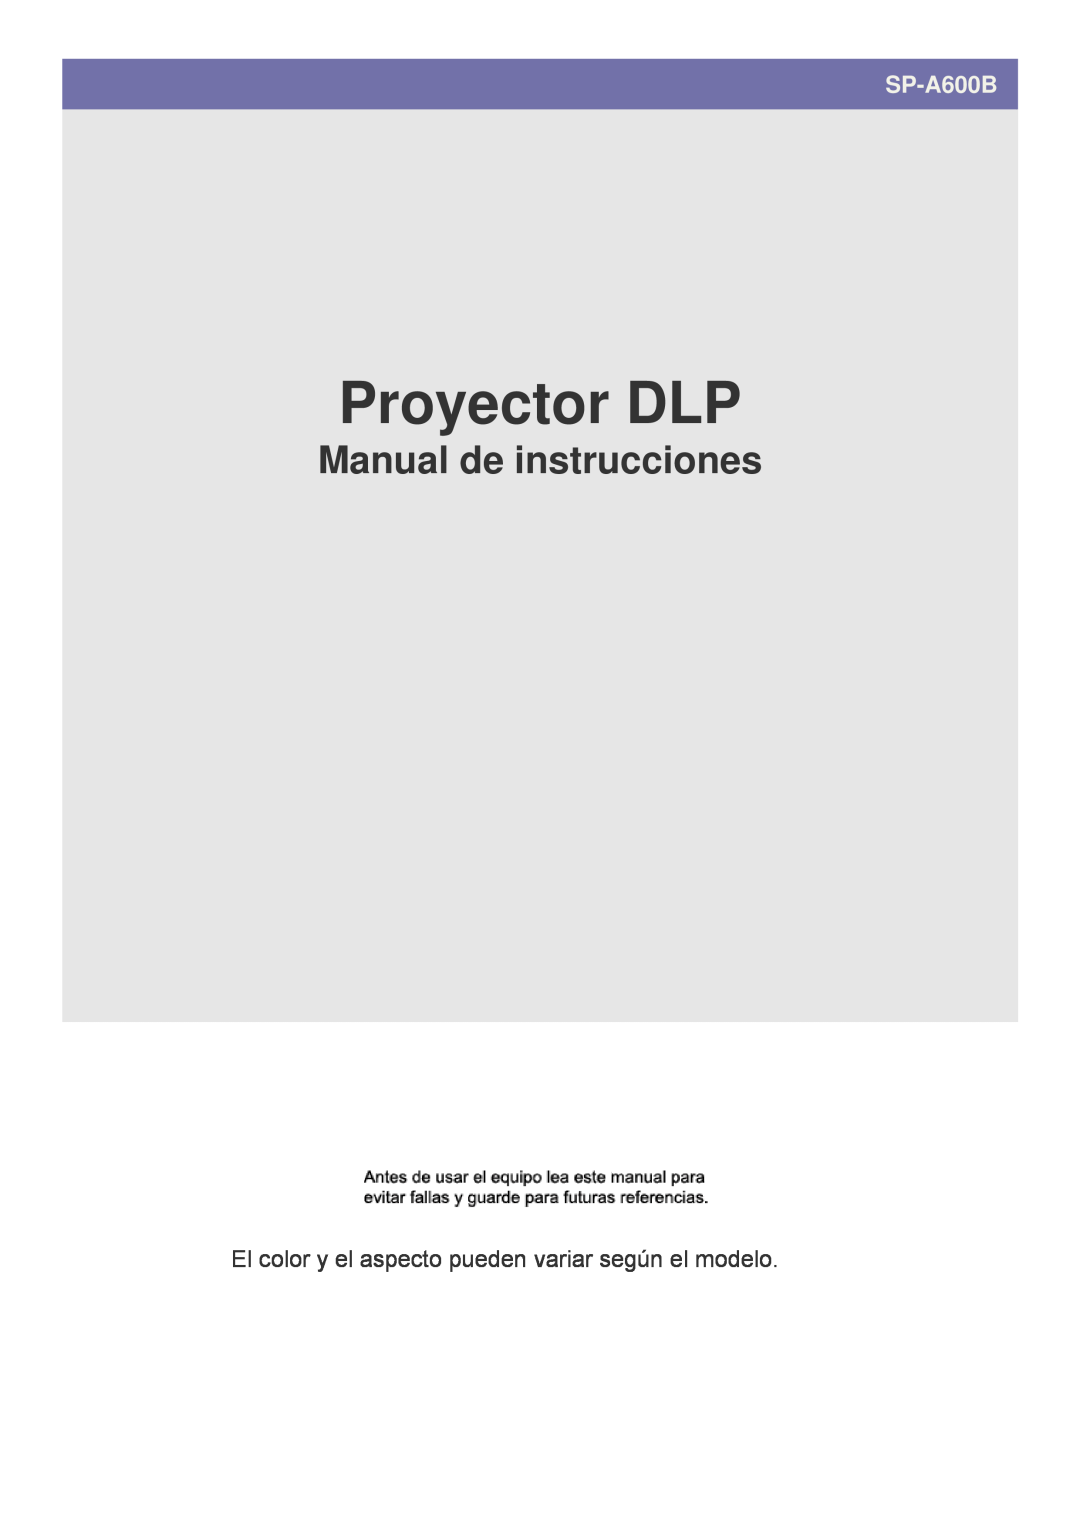 Samsung SPA600BX/EN manual Proyector DLP, Manual de instrucciones, SP-A600B 